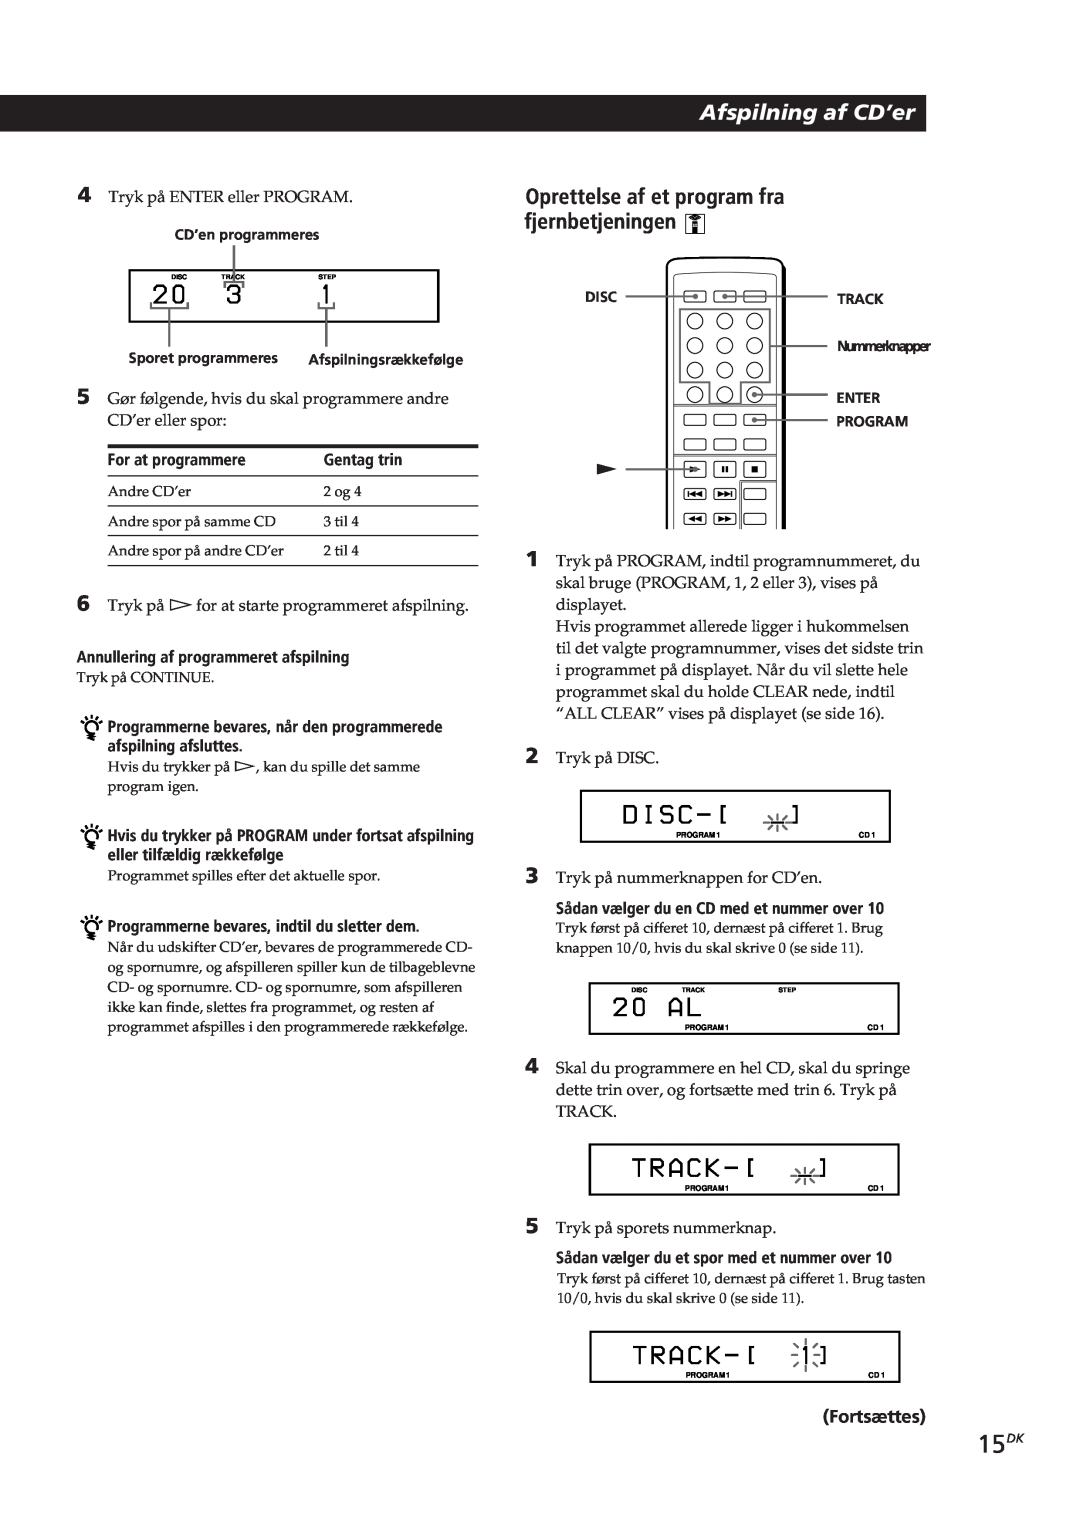 Sony CDP-CX153 manual D I S C, T R A C K, 15DK, Afspilning af CD’er, Oprettelse af et program fra fjernbetjeningen, 2 0 A L 